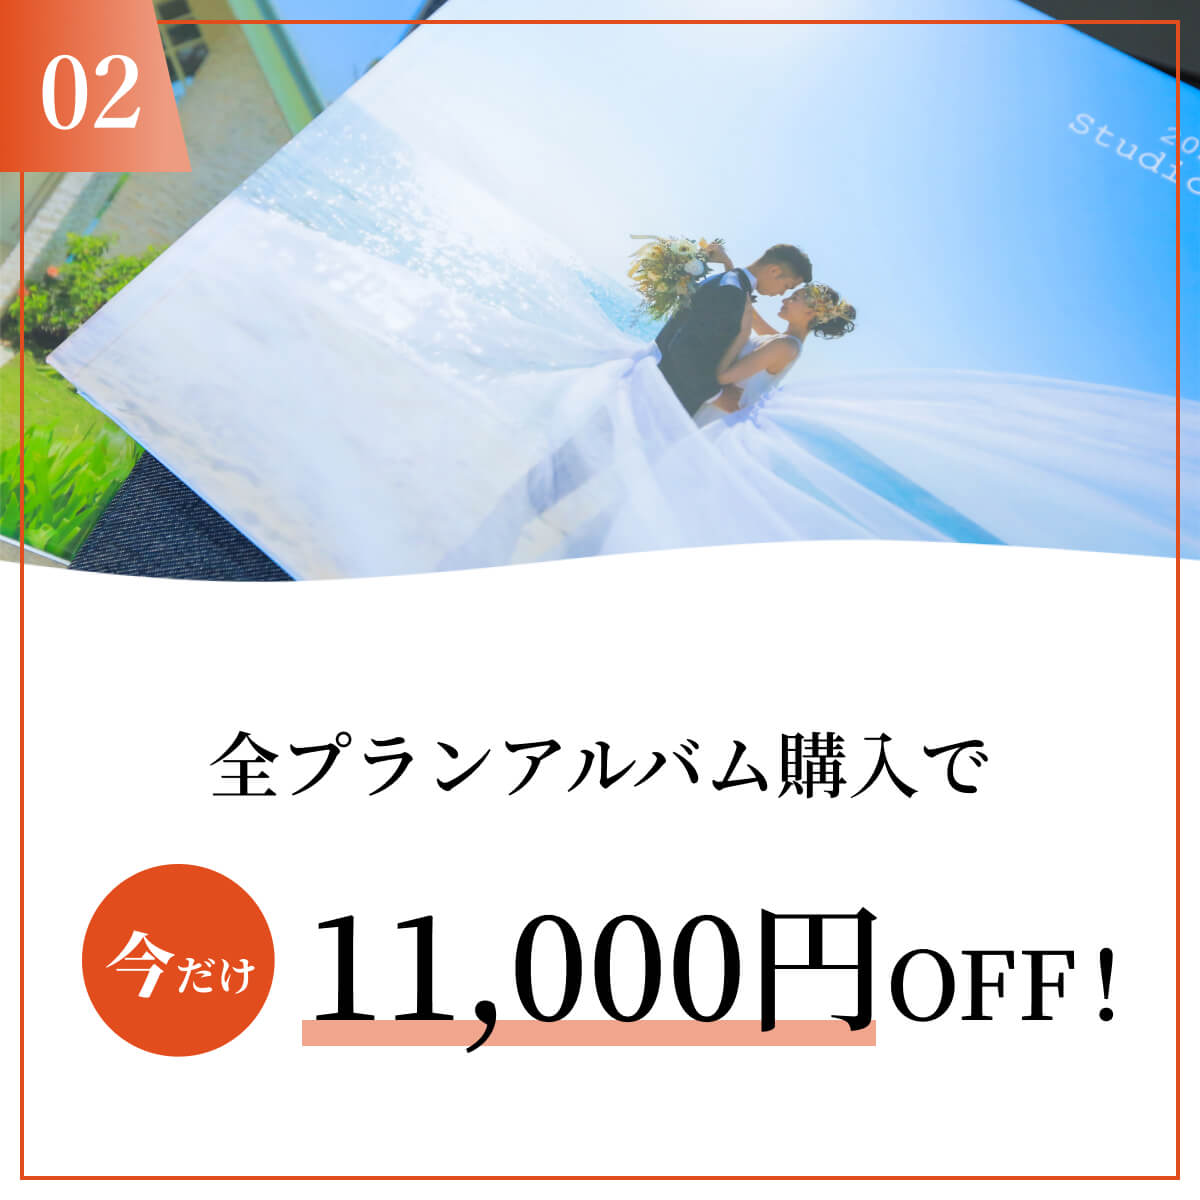 全プランアルバム購入で 今だけ11,000円OFF!